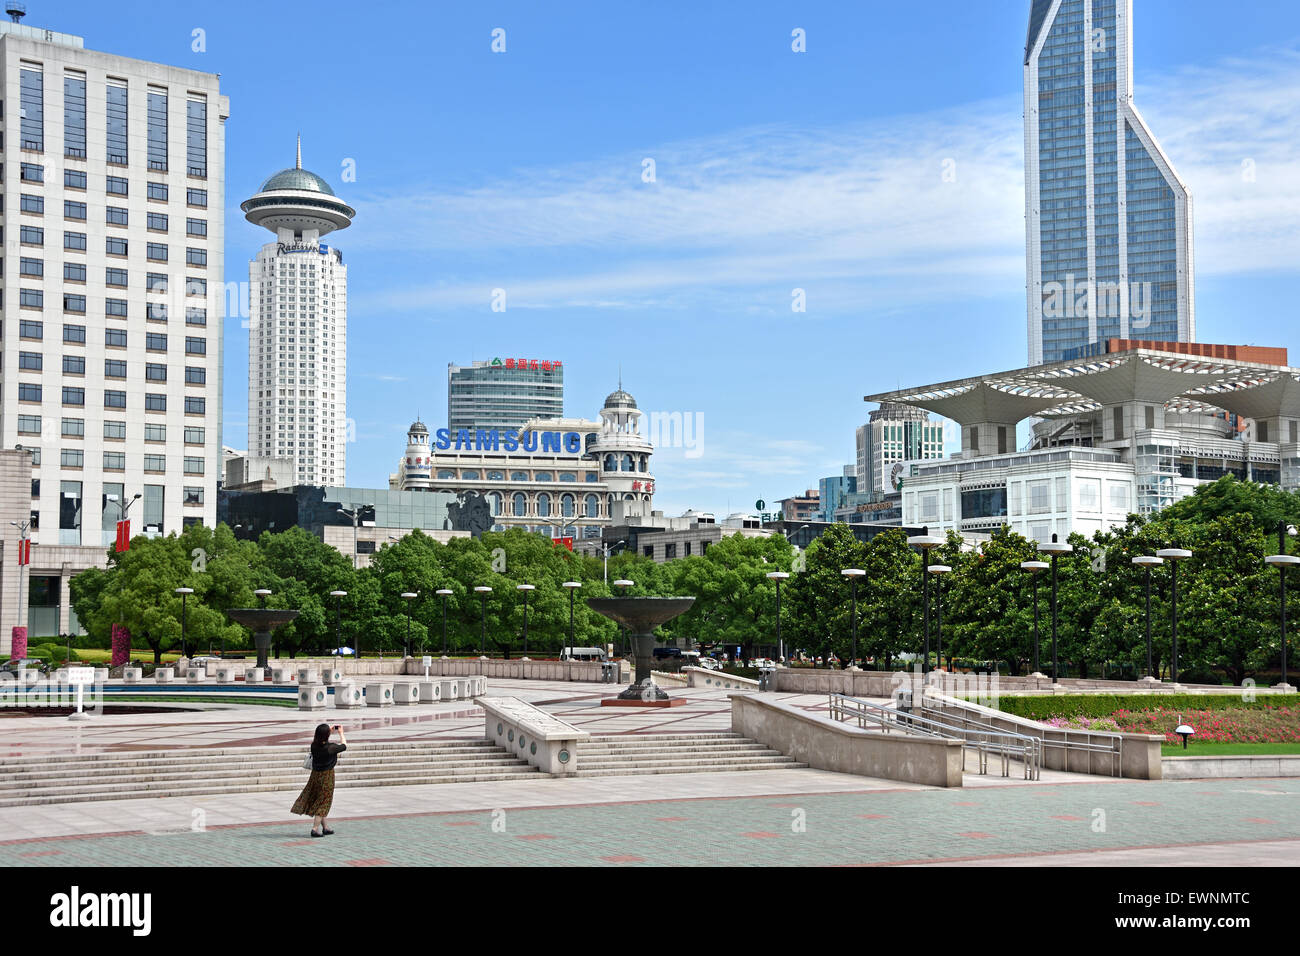 Brunnen mit Menschen und Kindern, Volksplatz, Gemeinderegierungsgebäude, Stadtverwaltung Shanghai, China Skyline City Stockfoto